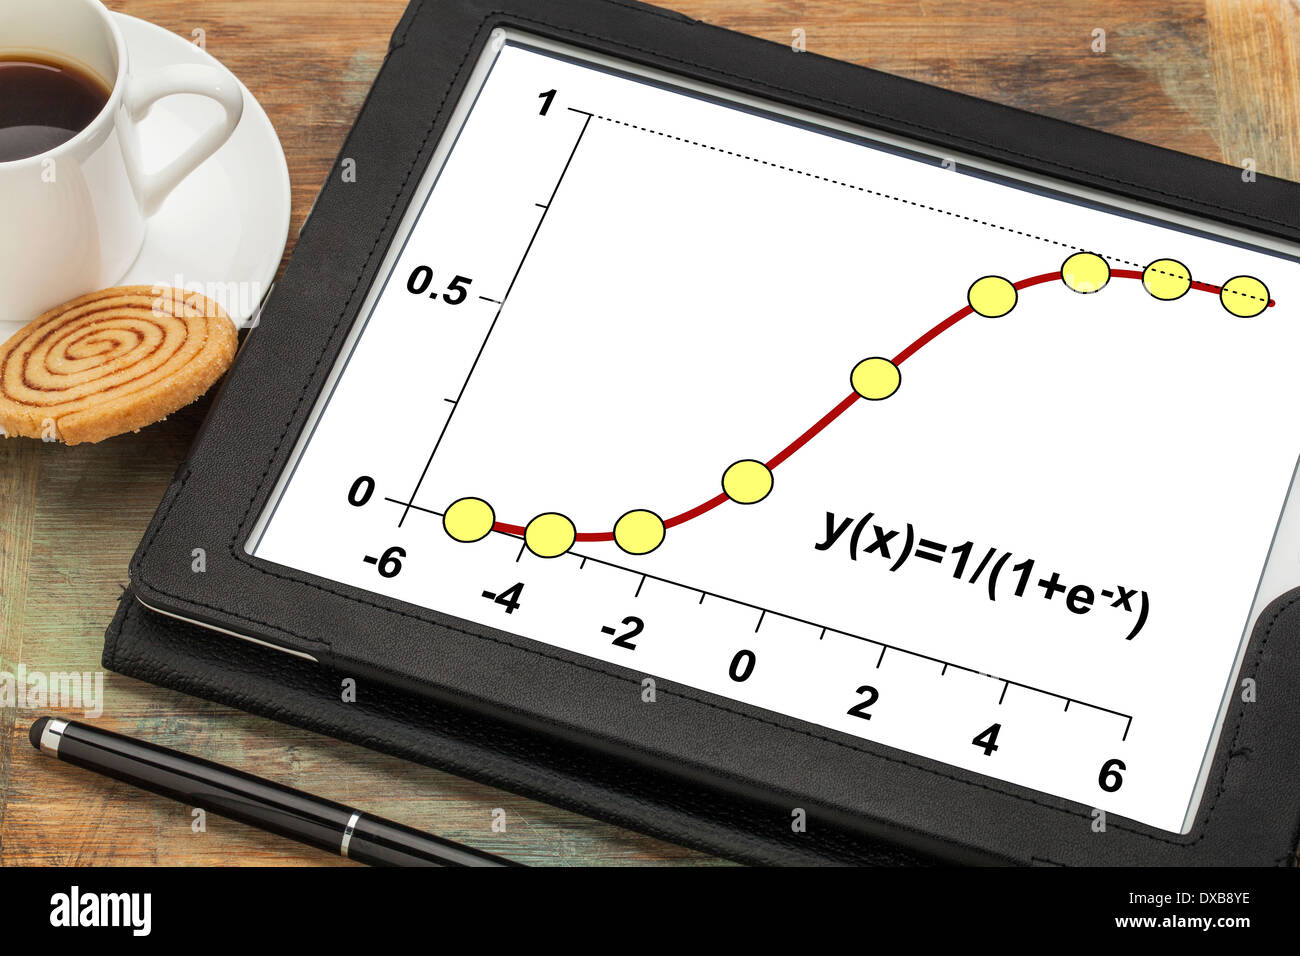 Modèle de croissance limité sur une tablette numérique avec une tasse de café - fonction logistique avec des applications en statistique Banque D'Images